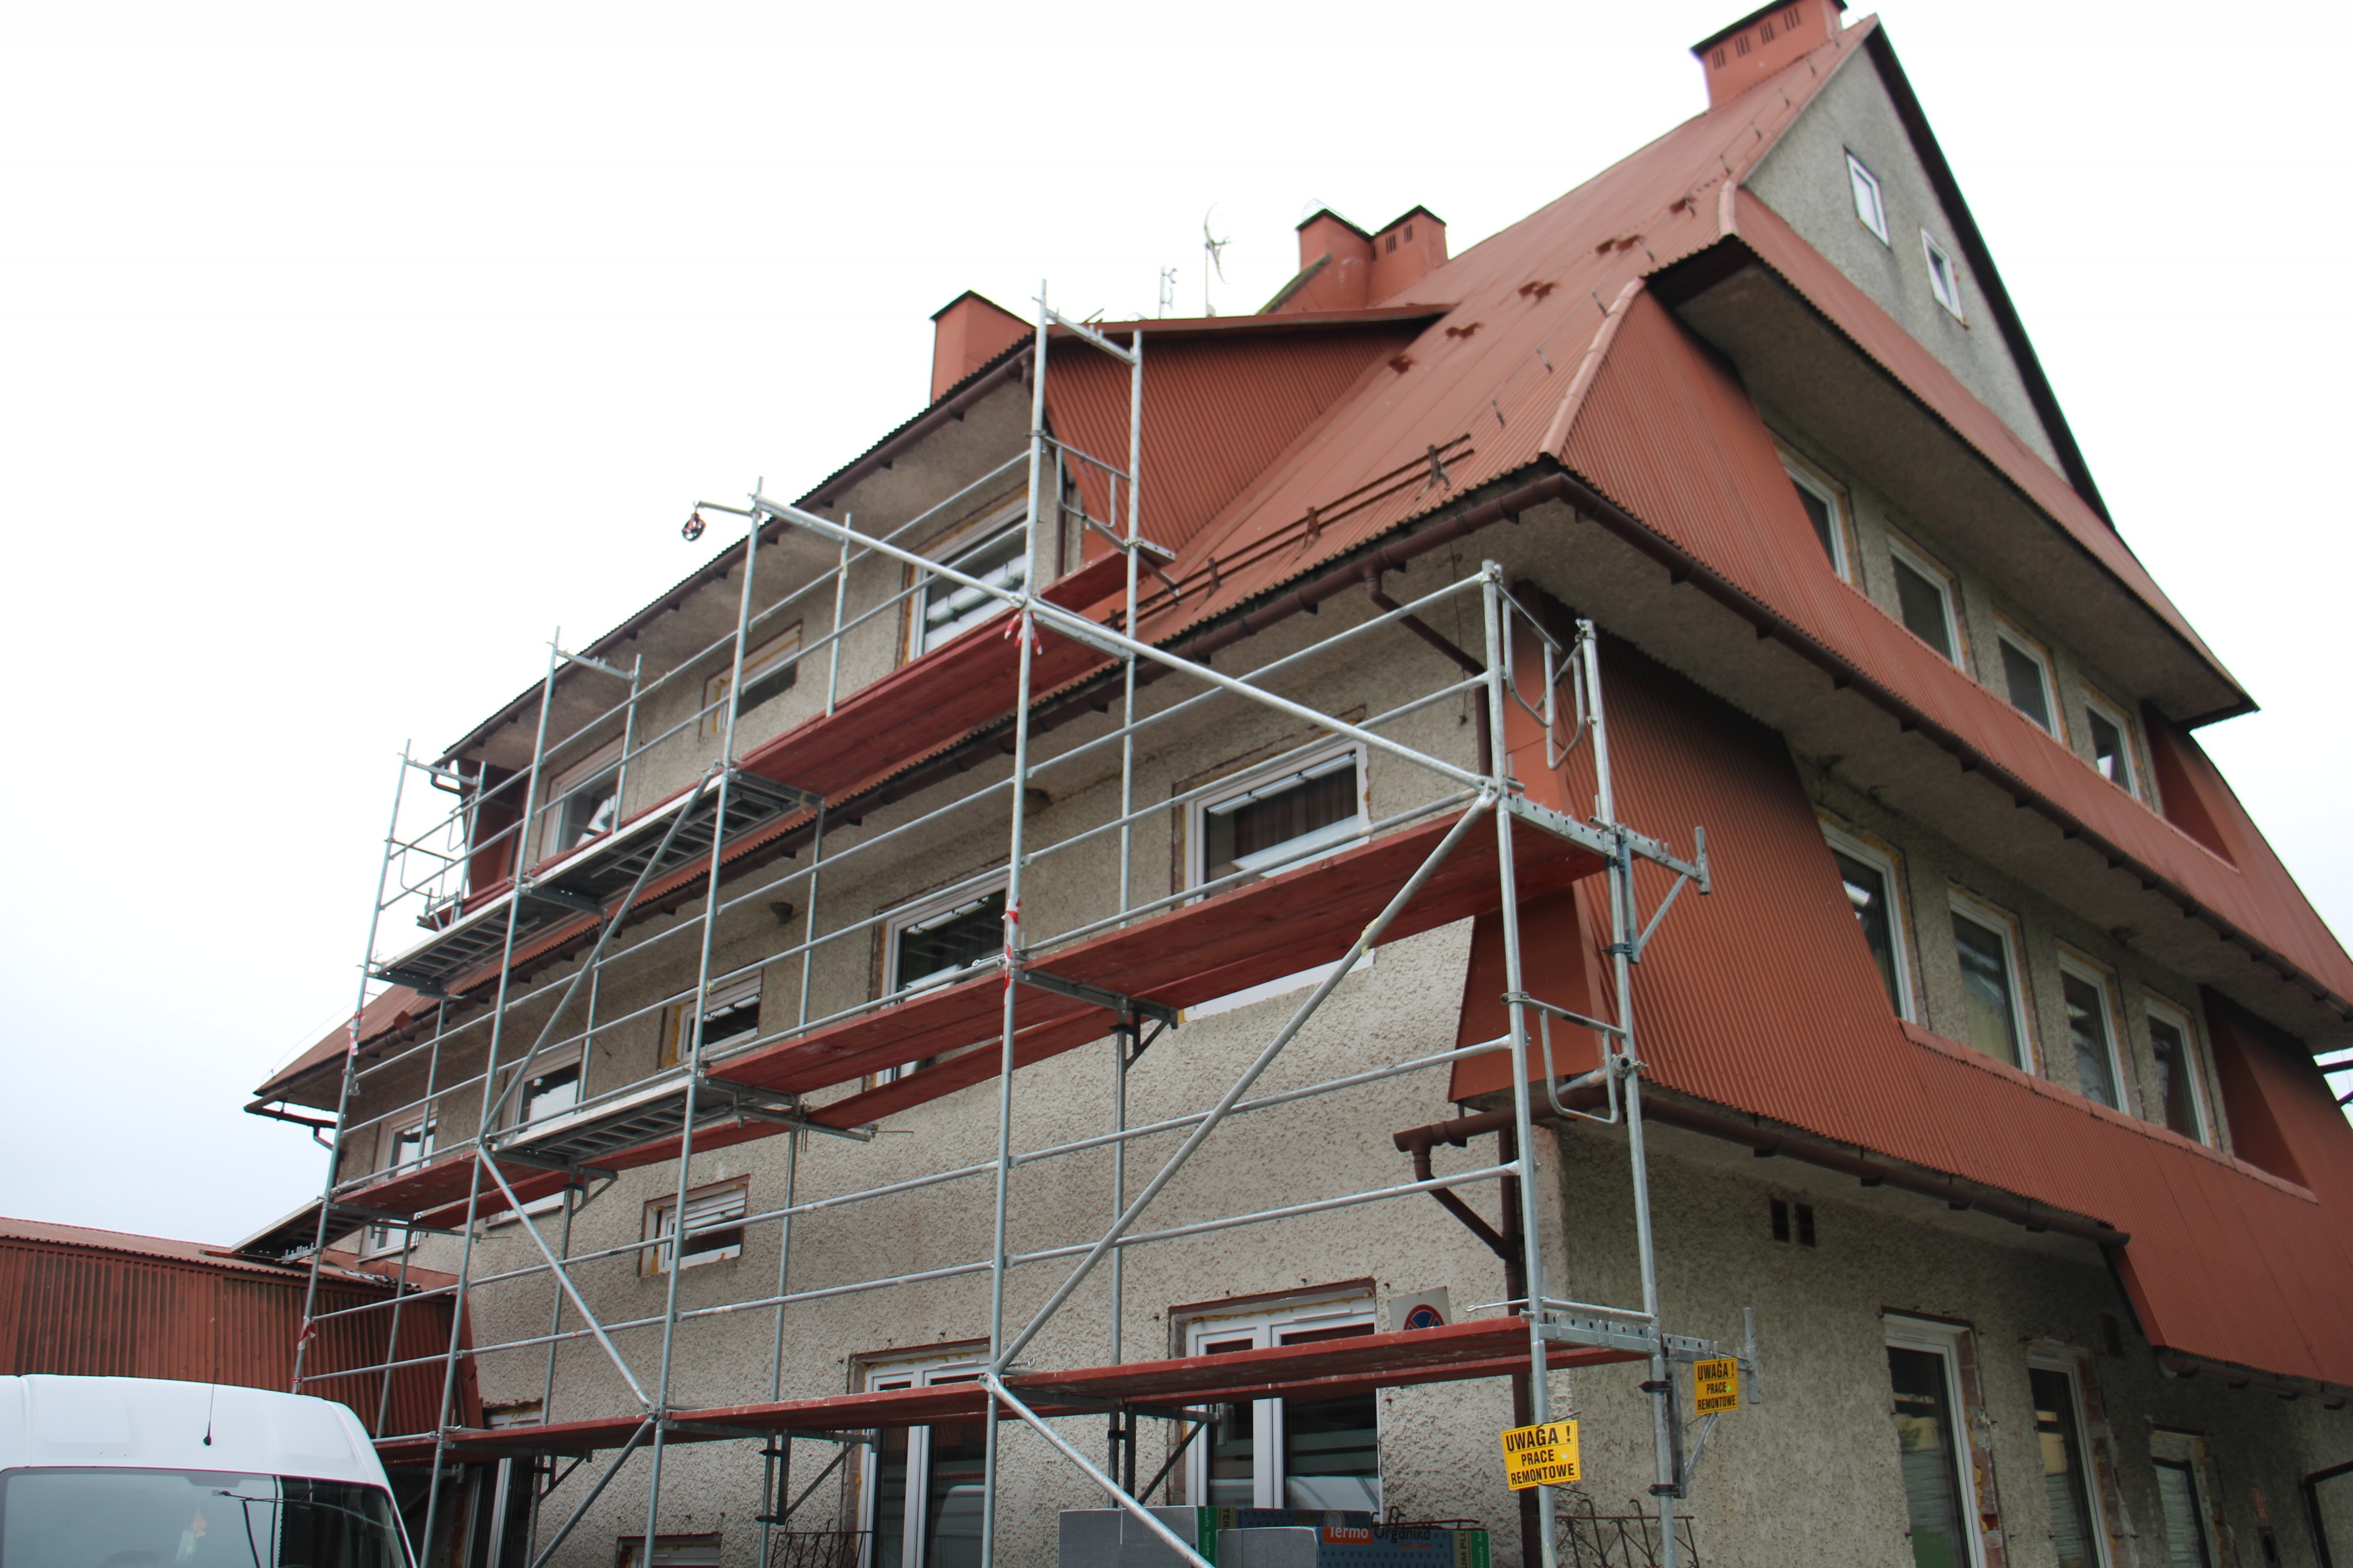 Trwa II etap prac budowlanych związanych z modernizacją wielofunkcyjnego budynku użyteczności publicznej w miejscowości Maniowy przy ul. Gorczańskiej 6.